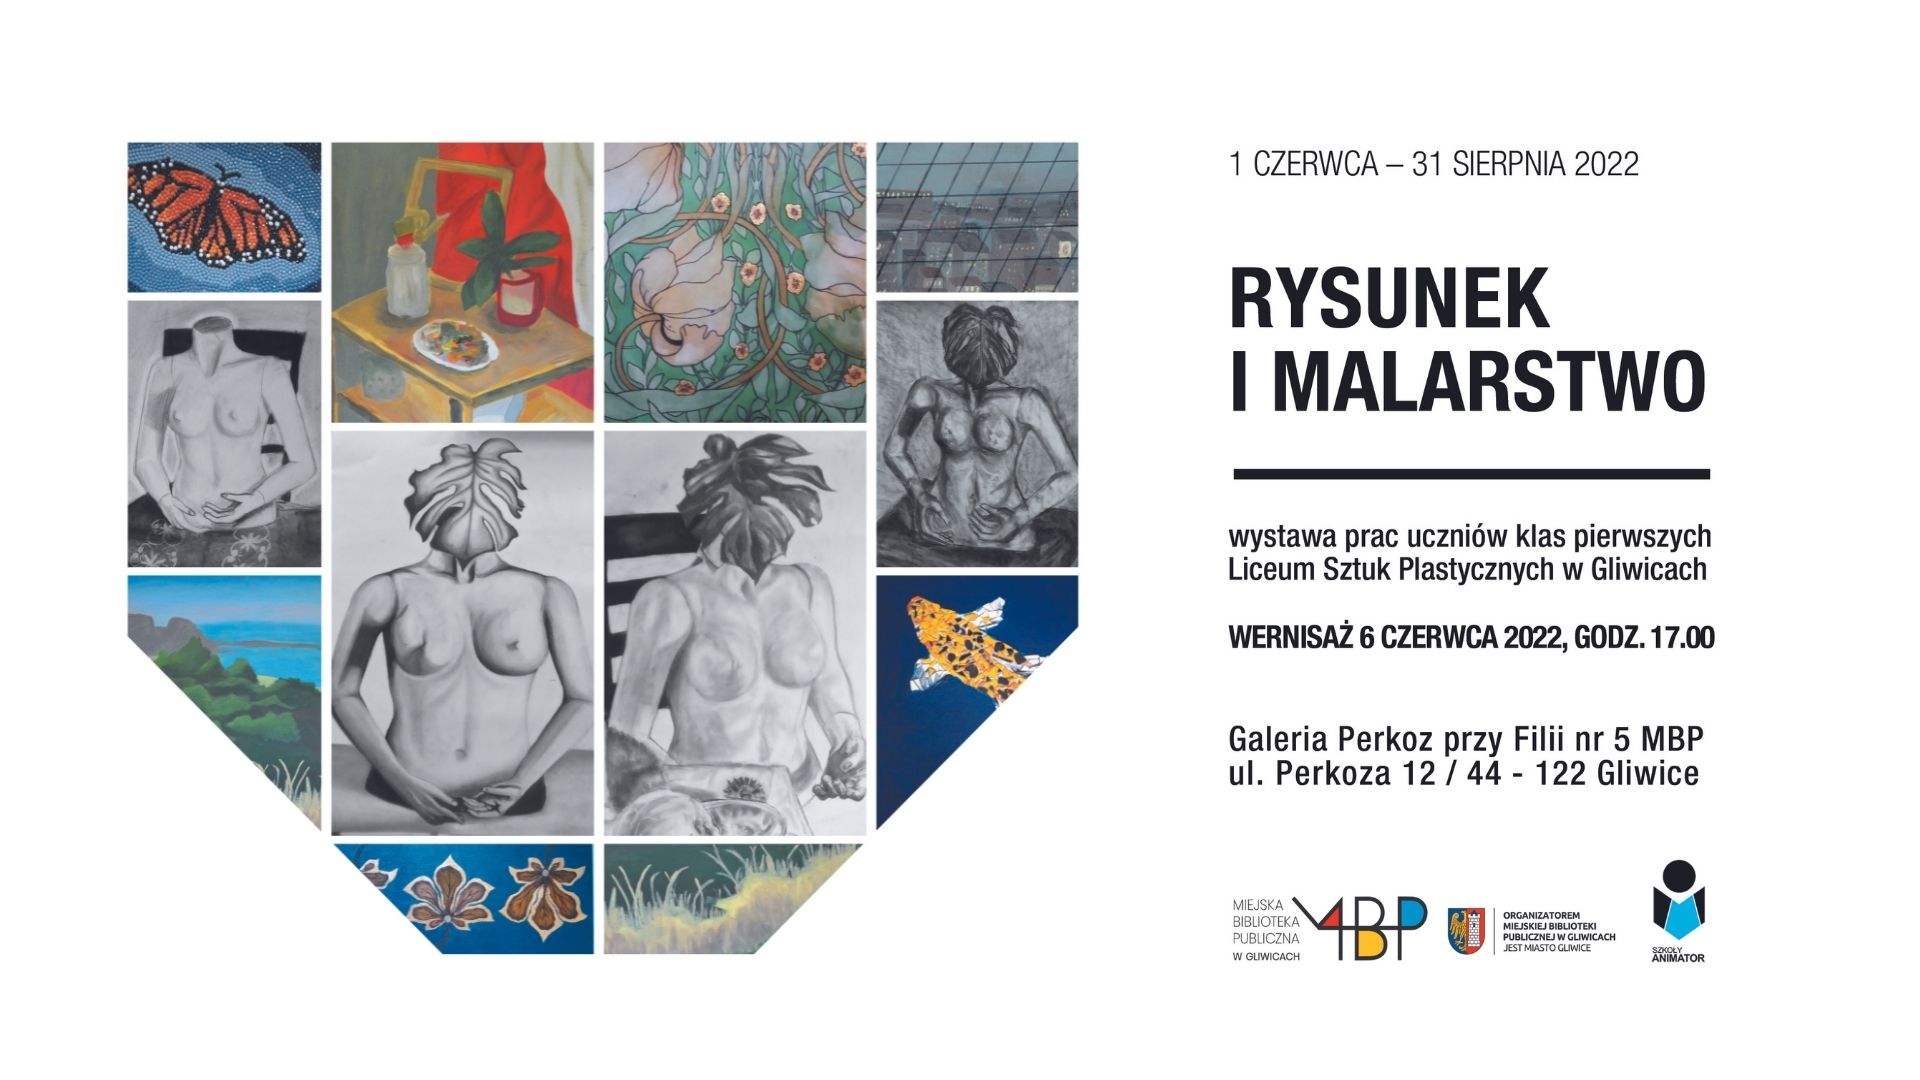 RYSUNEK I MALARSTWO - wystawa prac uczniów Liceum Sztuk Plastycznych w Gliwicach